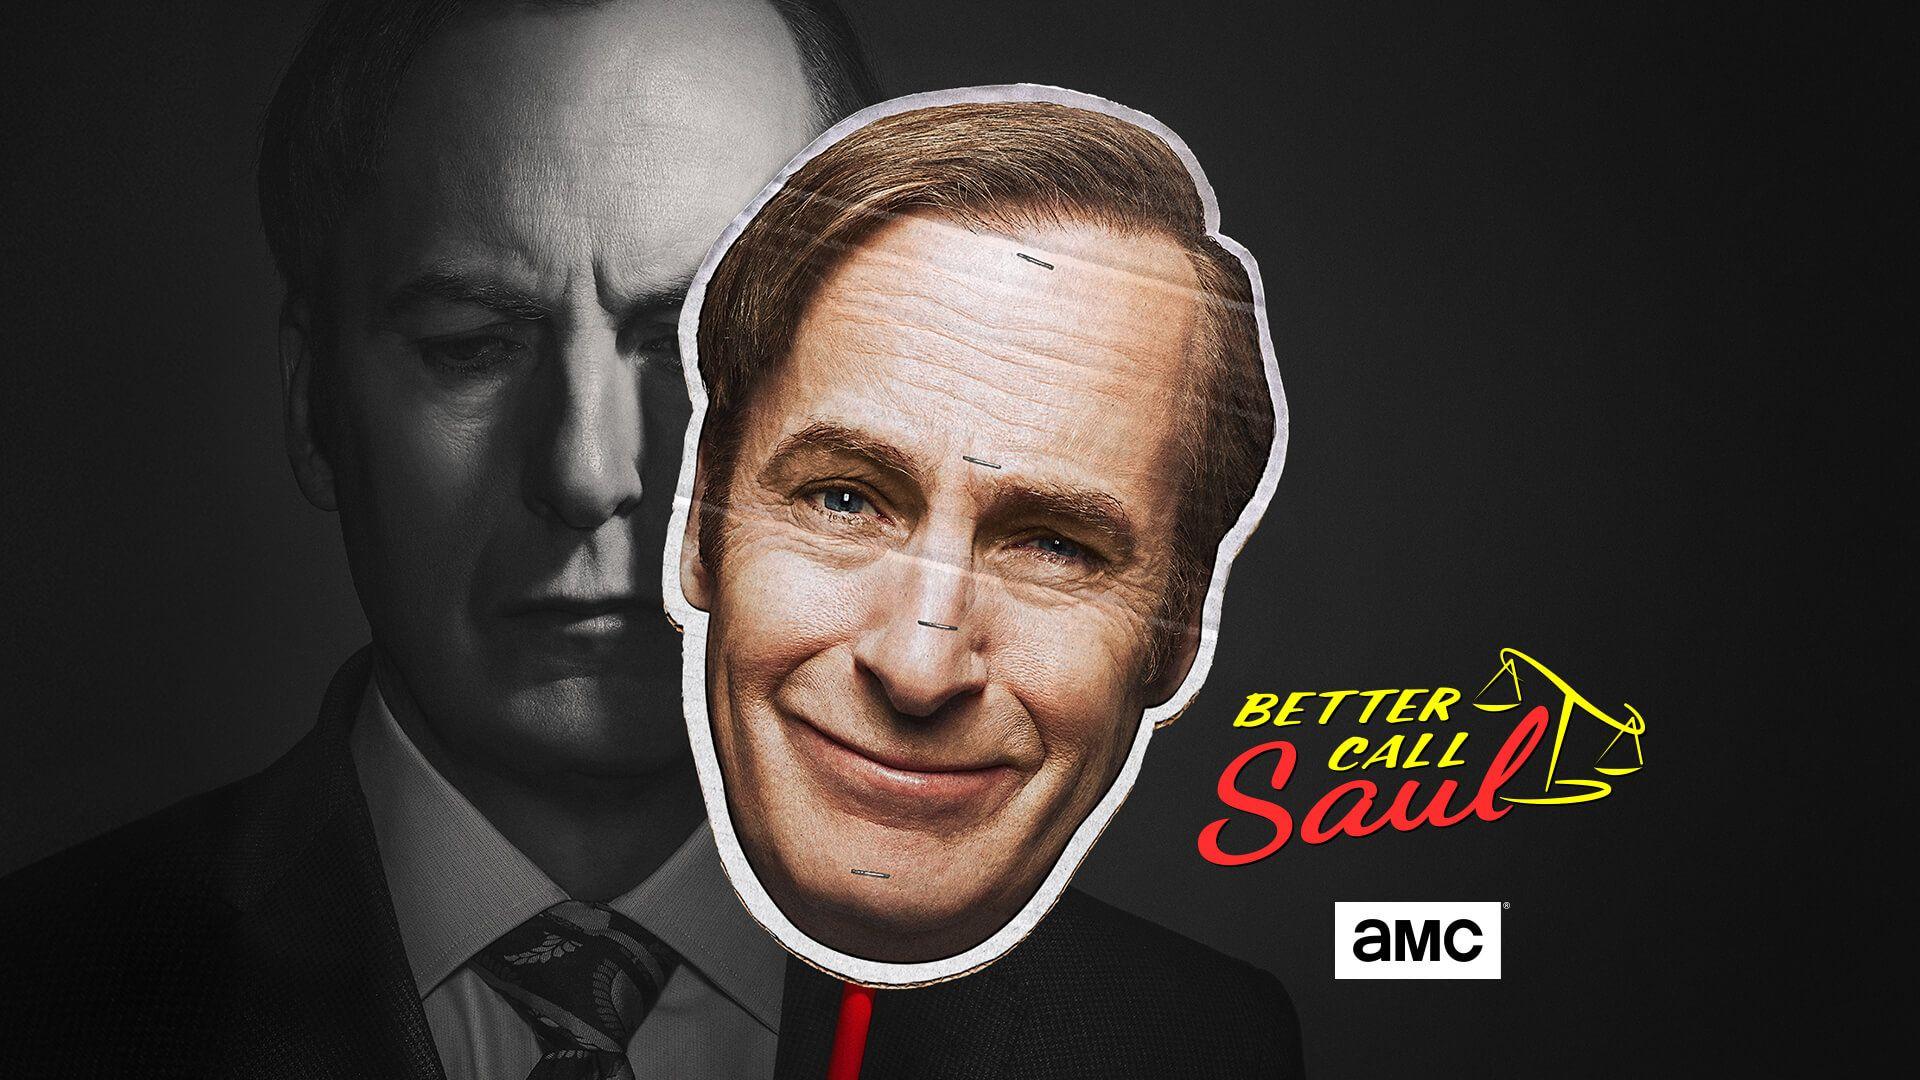 Hình nền Better Call Saul - Top Hình Ảnh Đẹp